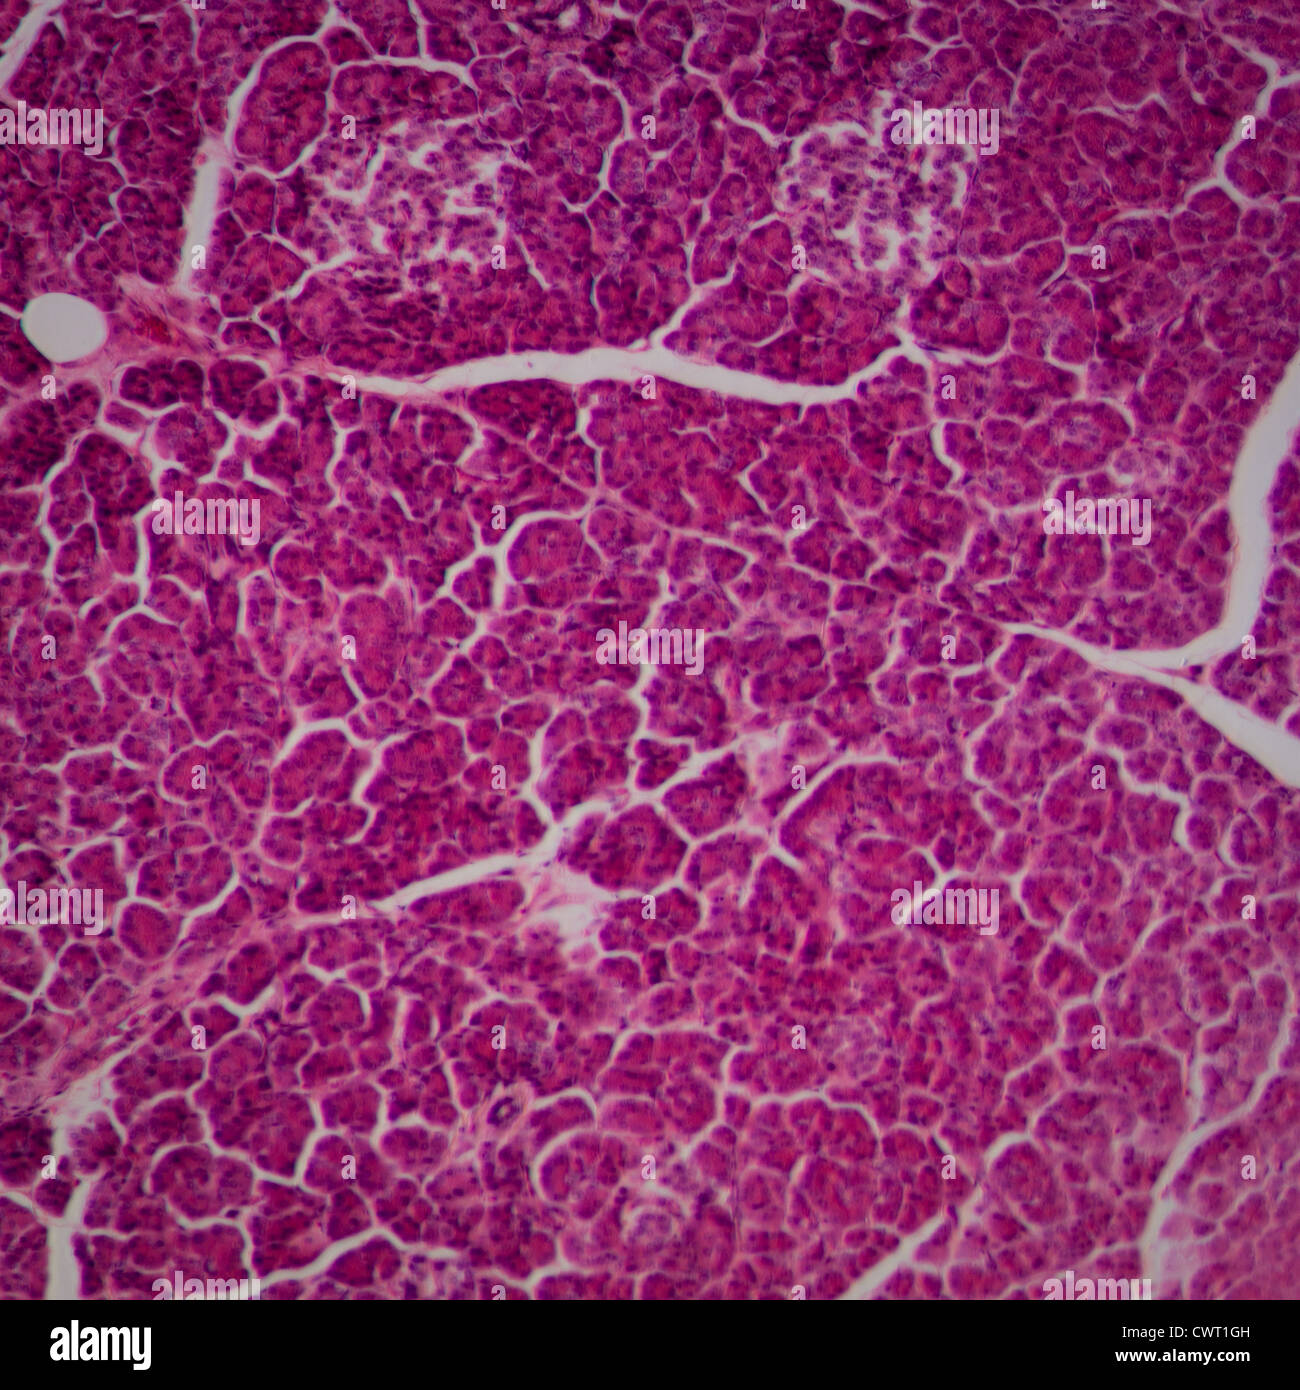 La section des sciences de tissus hépatiques microscopiques Banque D'Images